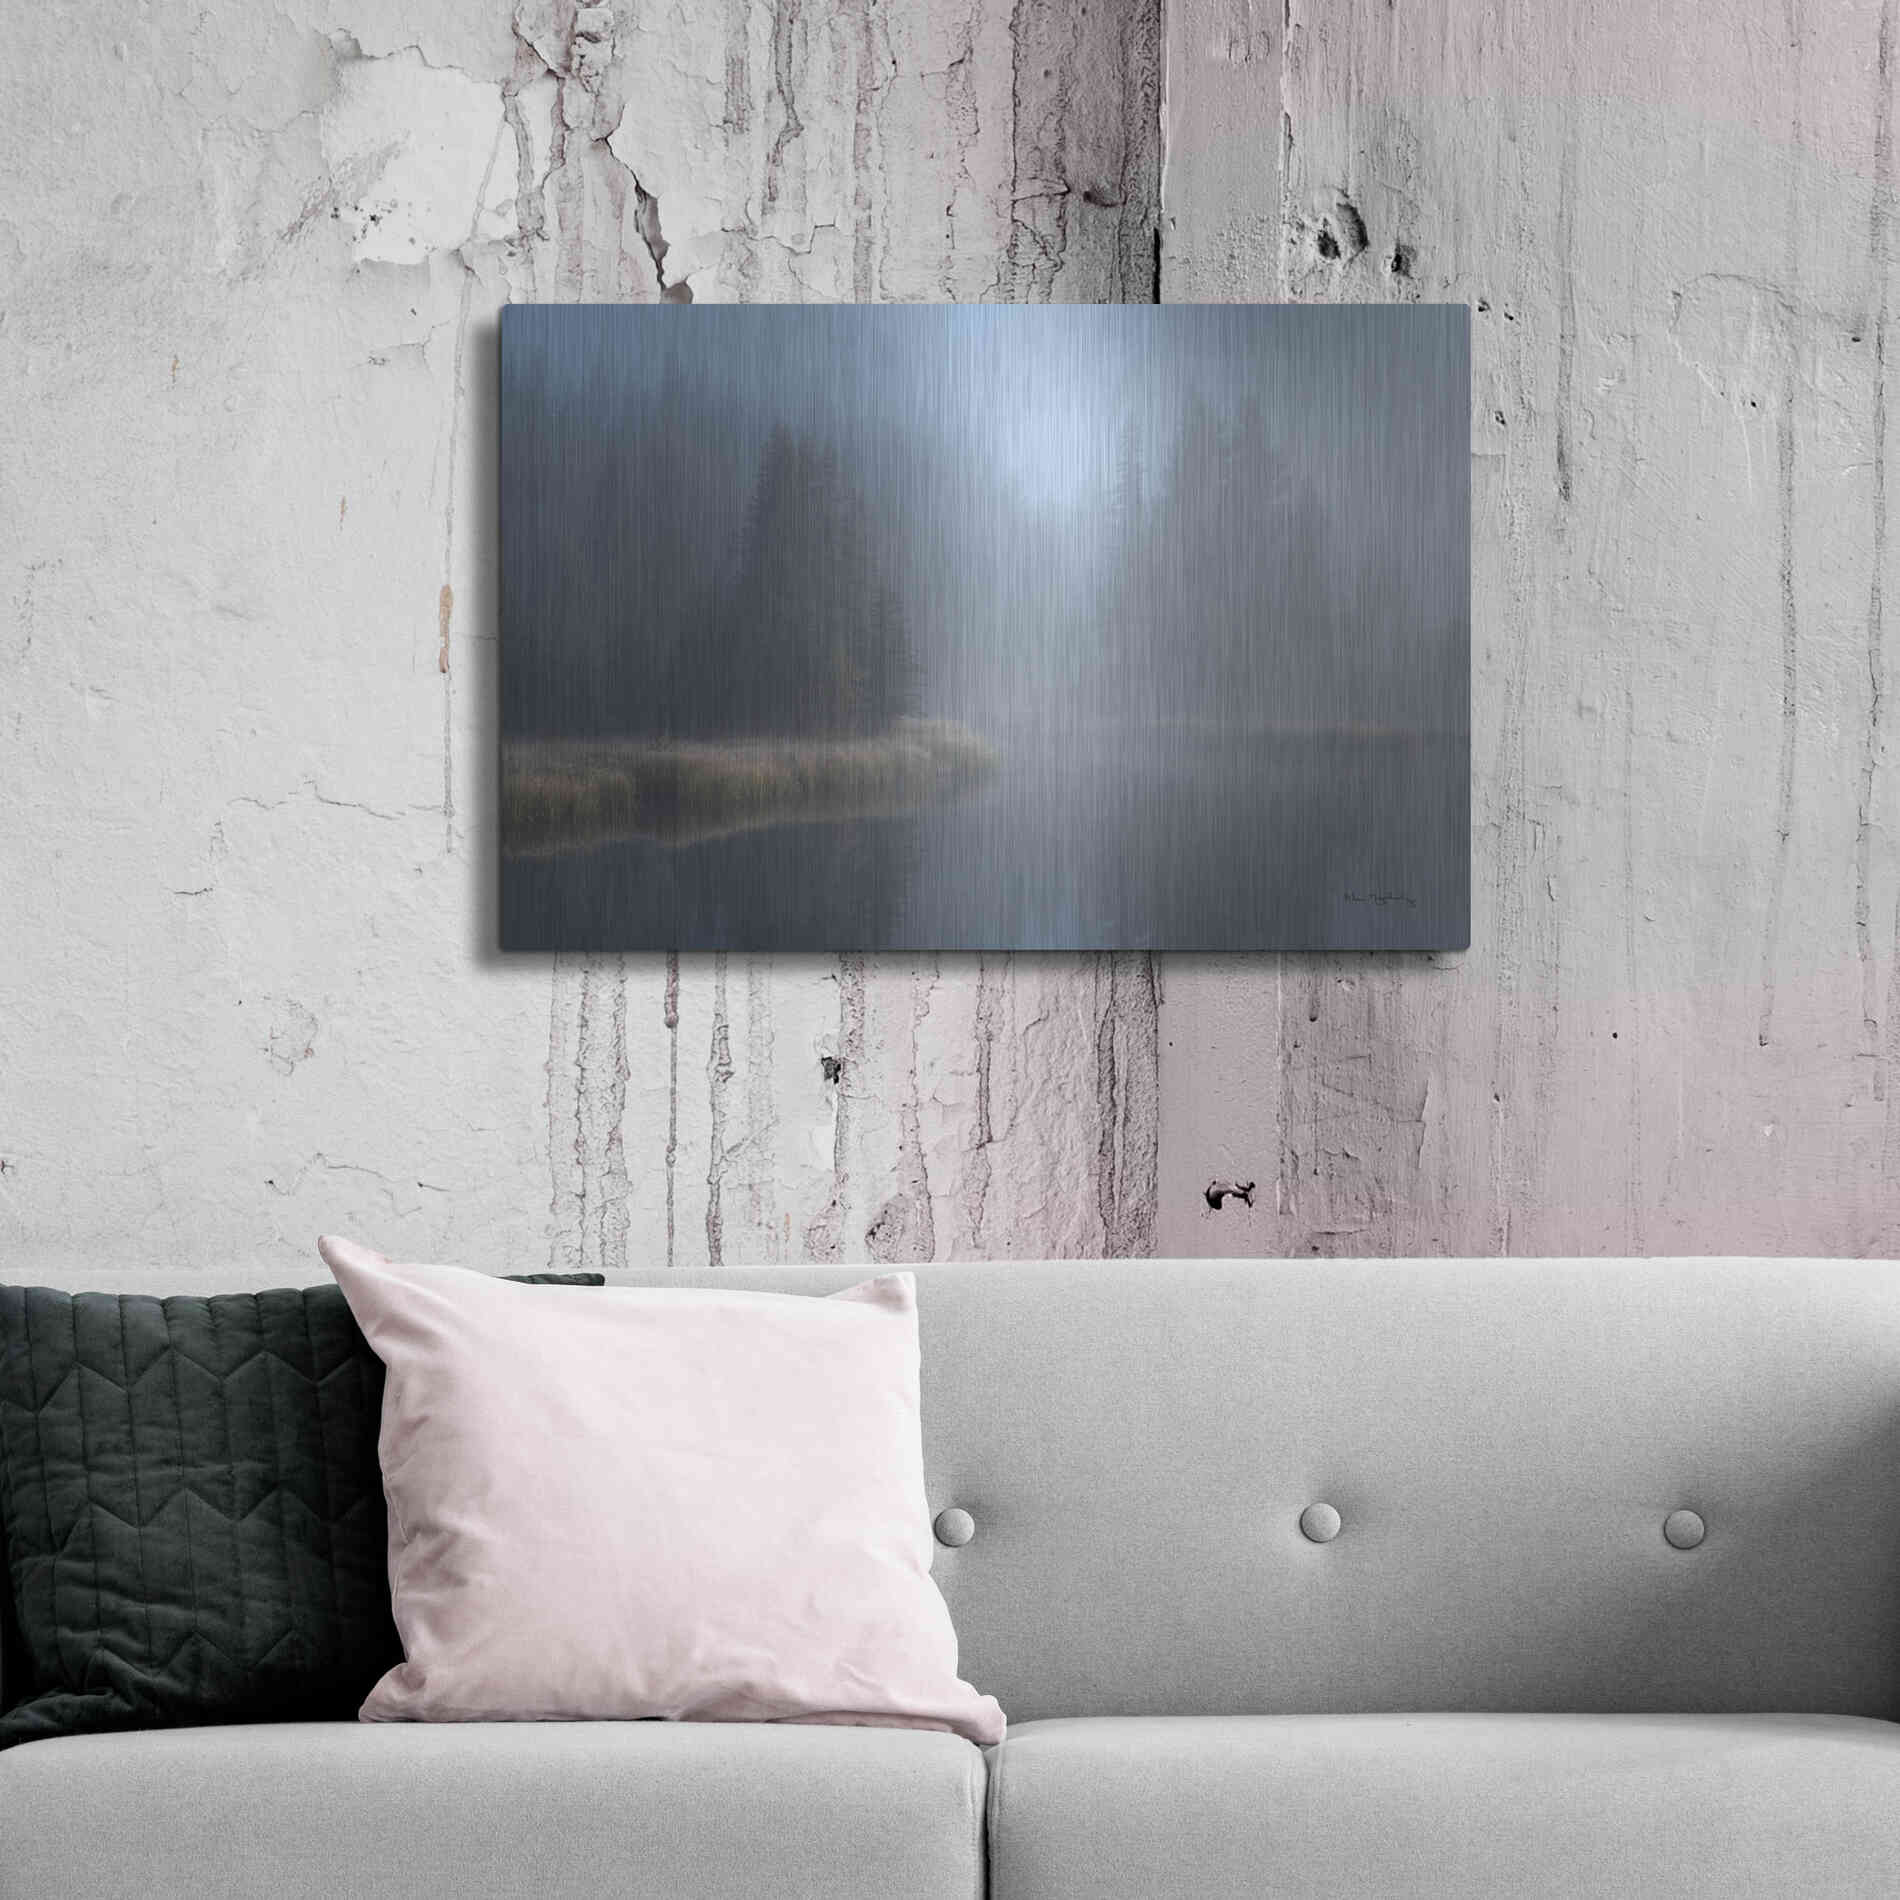 Luxe Metal Art 'Grand Teton Lake Fog' by Alan Majchrowicz,Metal Wall Art,36x24